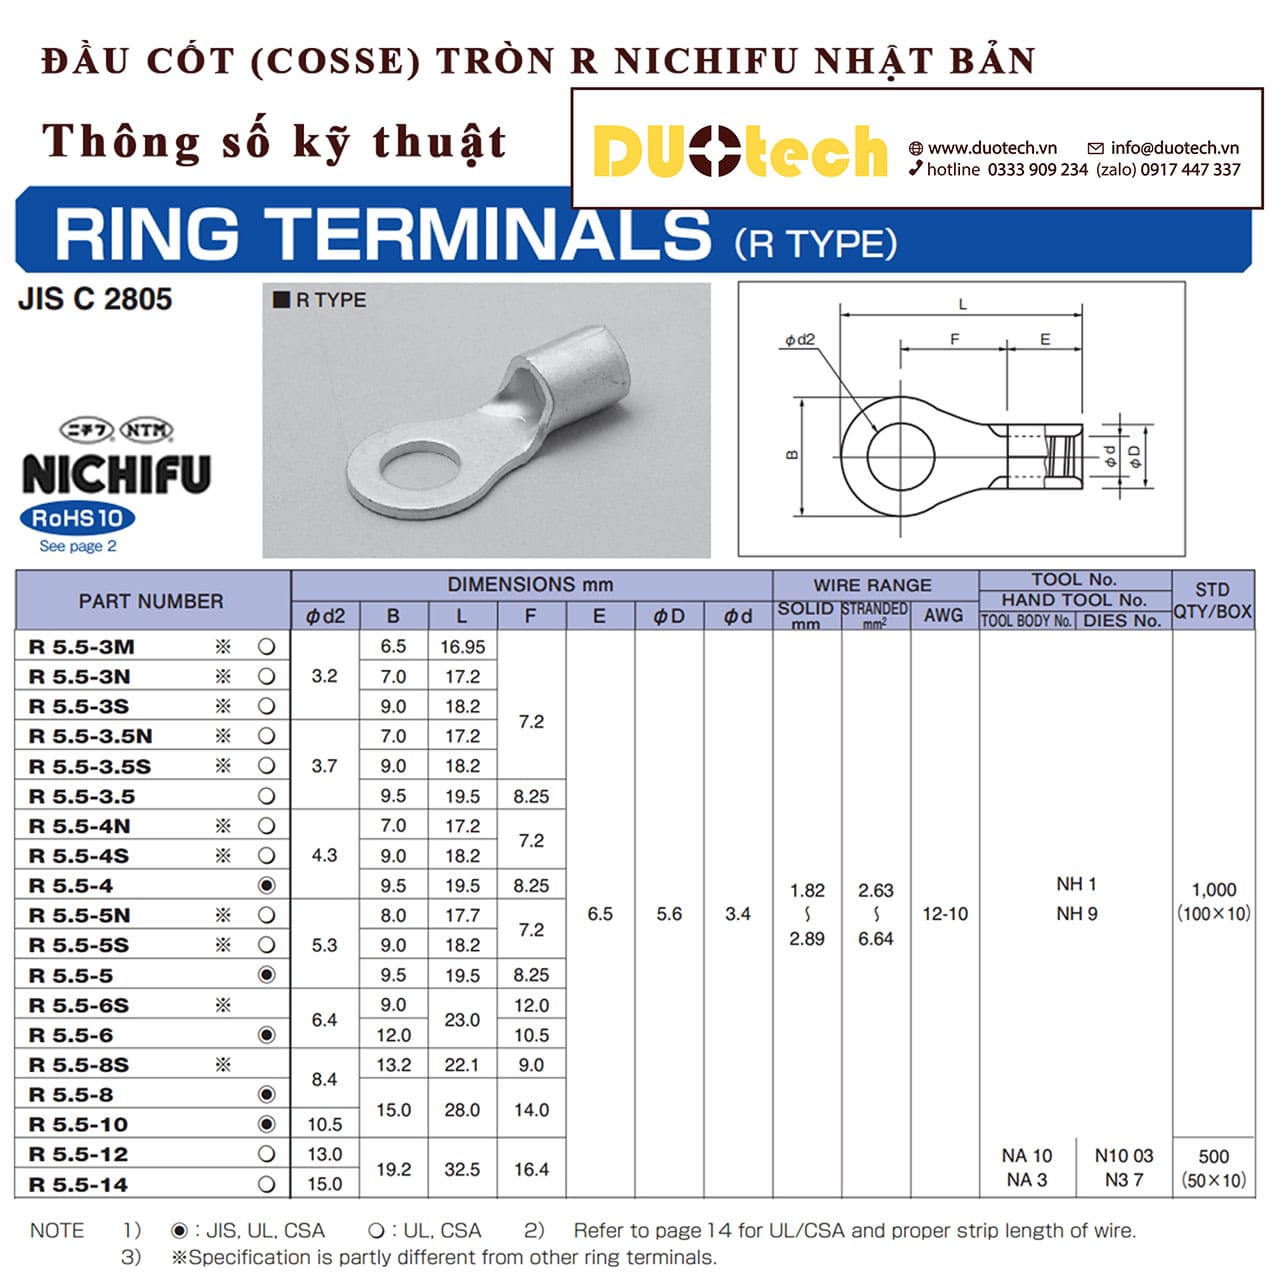 nichifu vietnam R5.5-3.5 R5.5-4 R5.5-4N R5.5-4S R5.5-5 R5.5-5S R5.5-6 R5.5-6S R5.5-8 R5.5-12